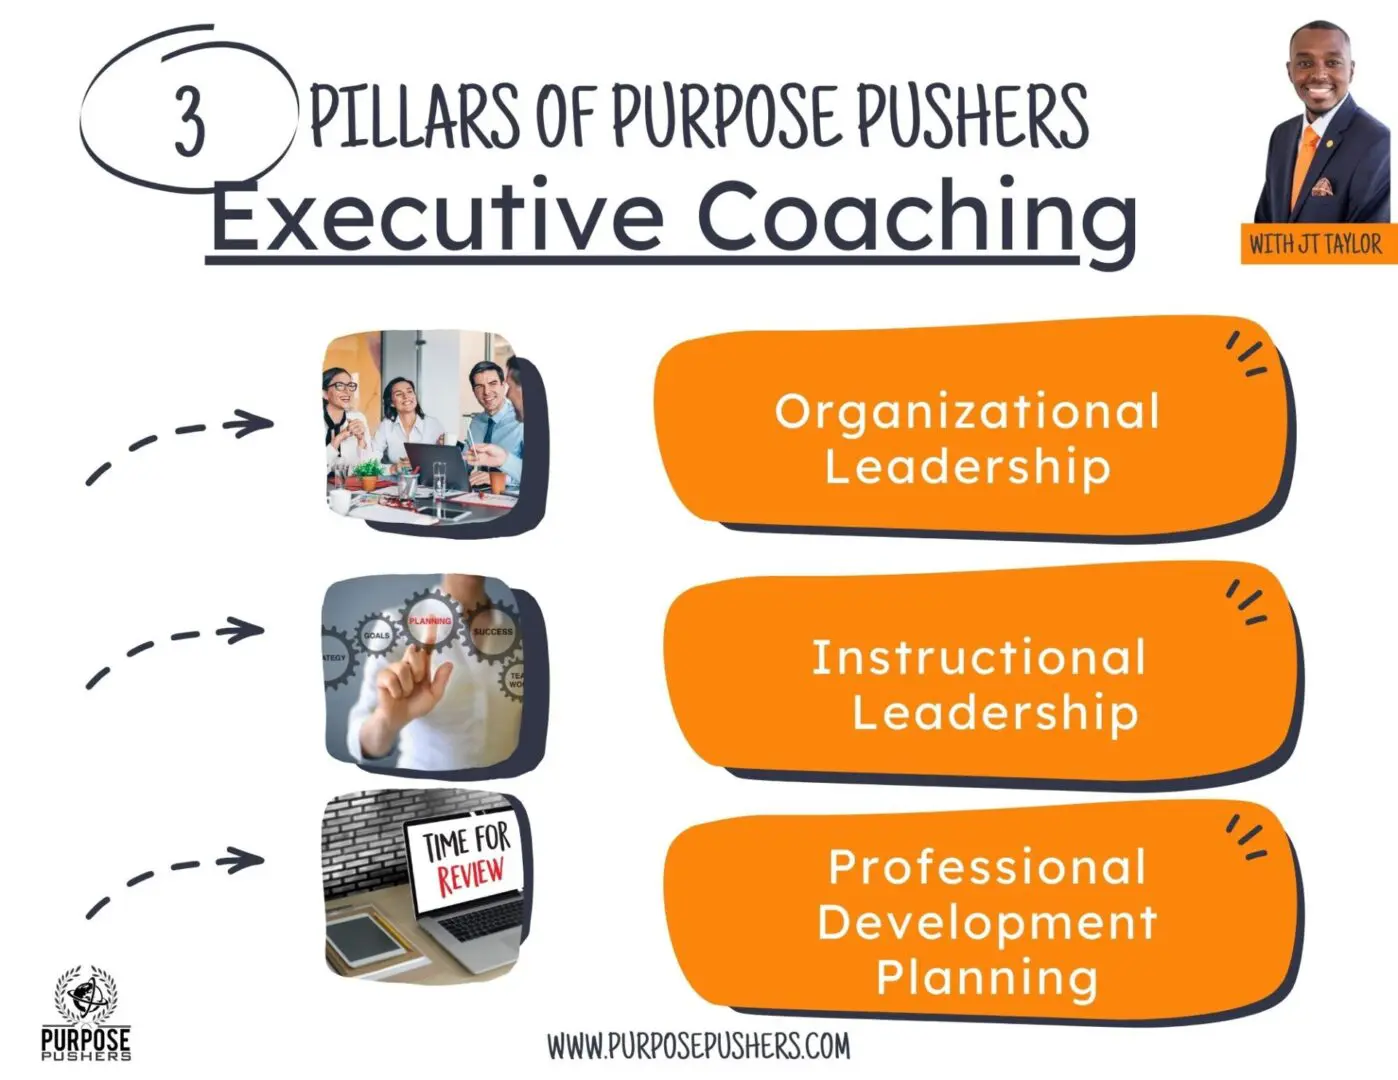 Purpose Pushers Executive Coaching - ADMIN